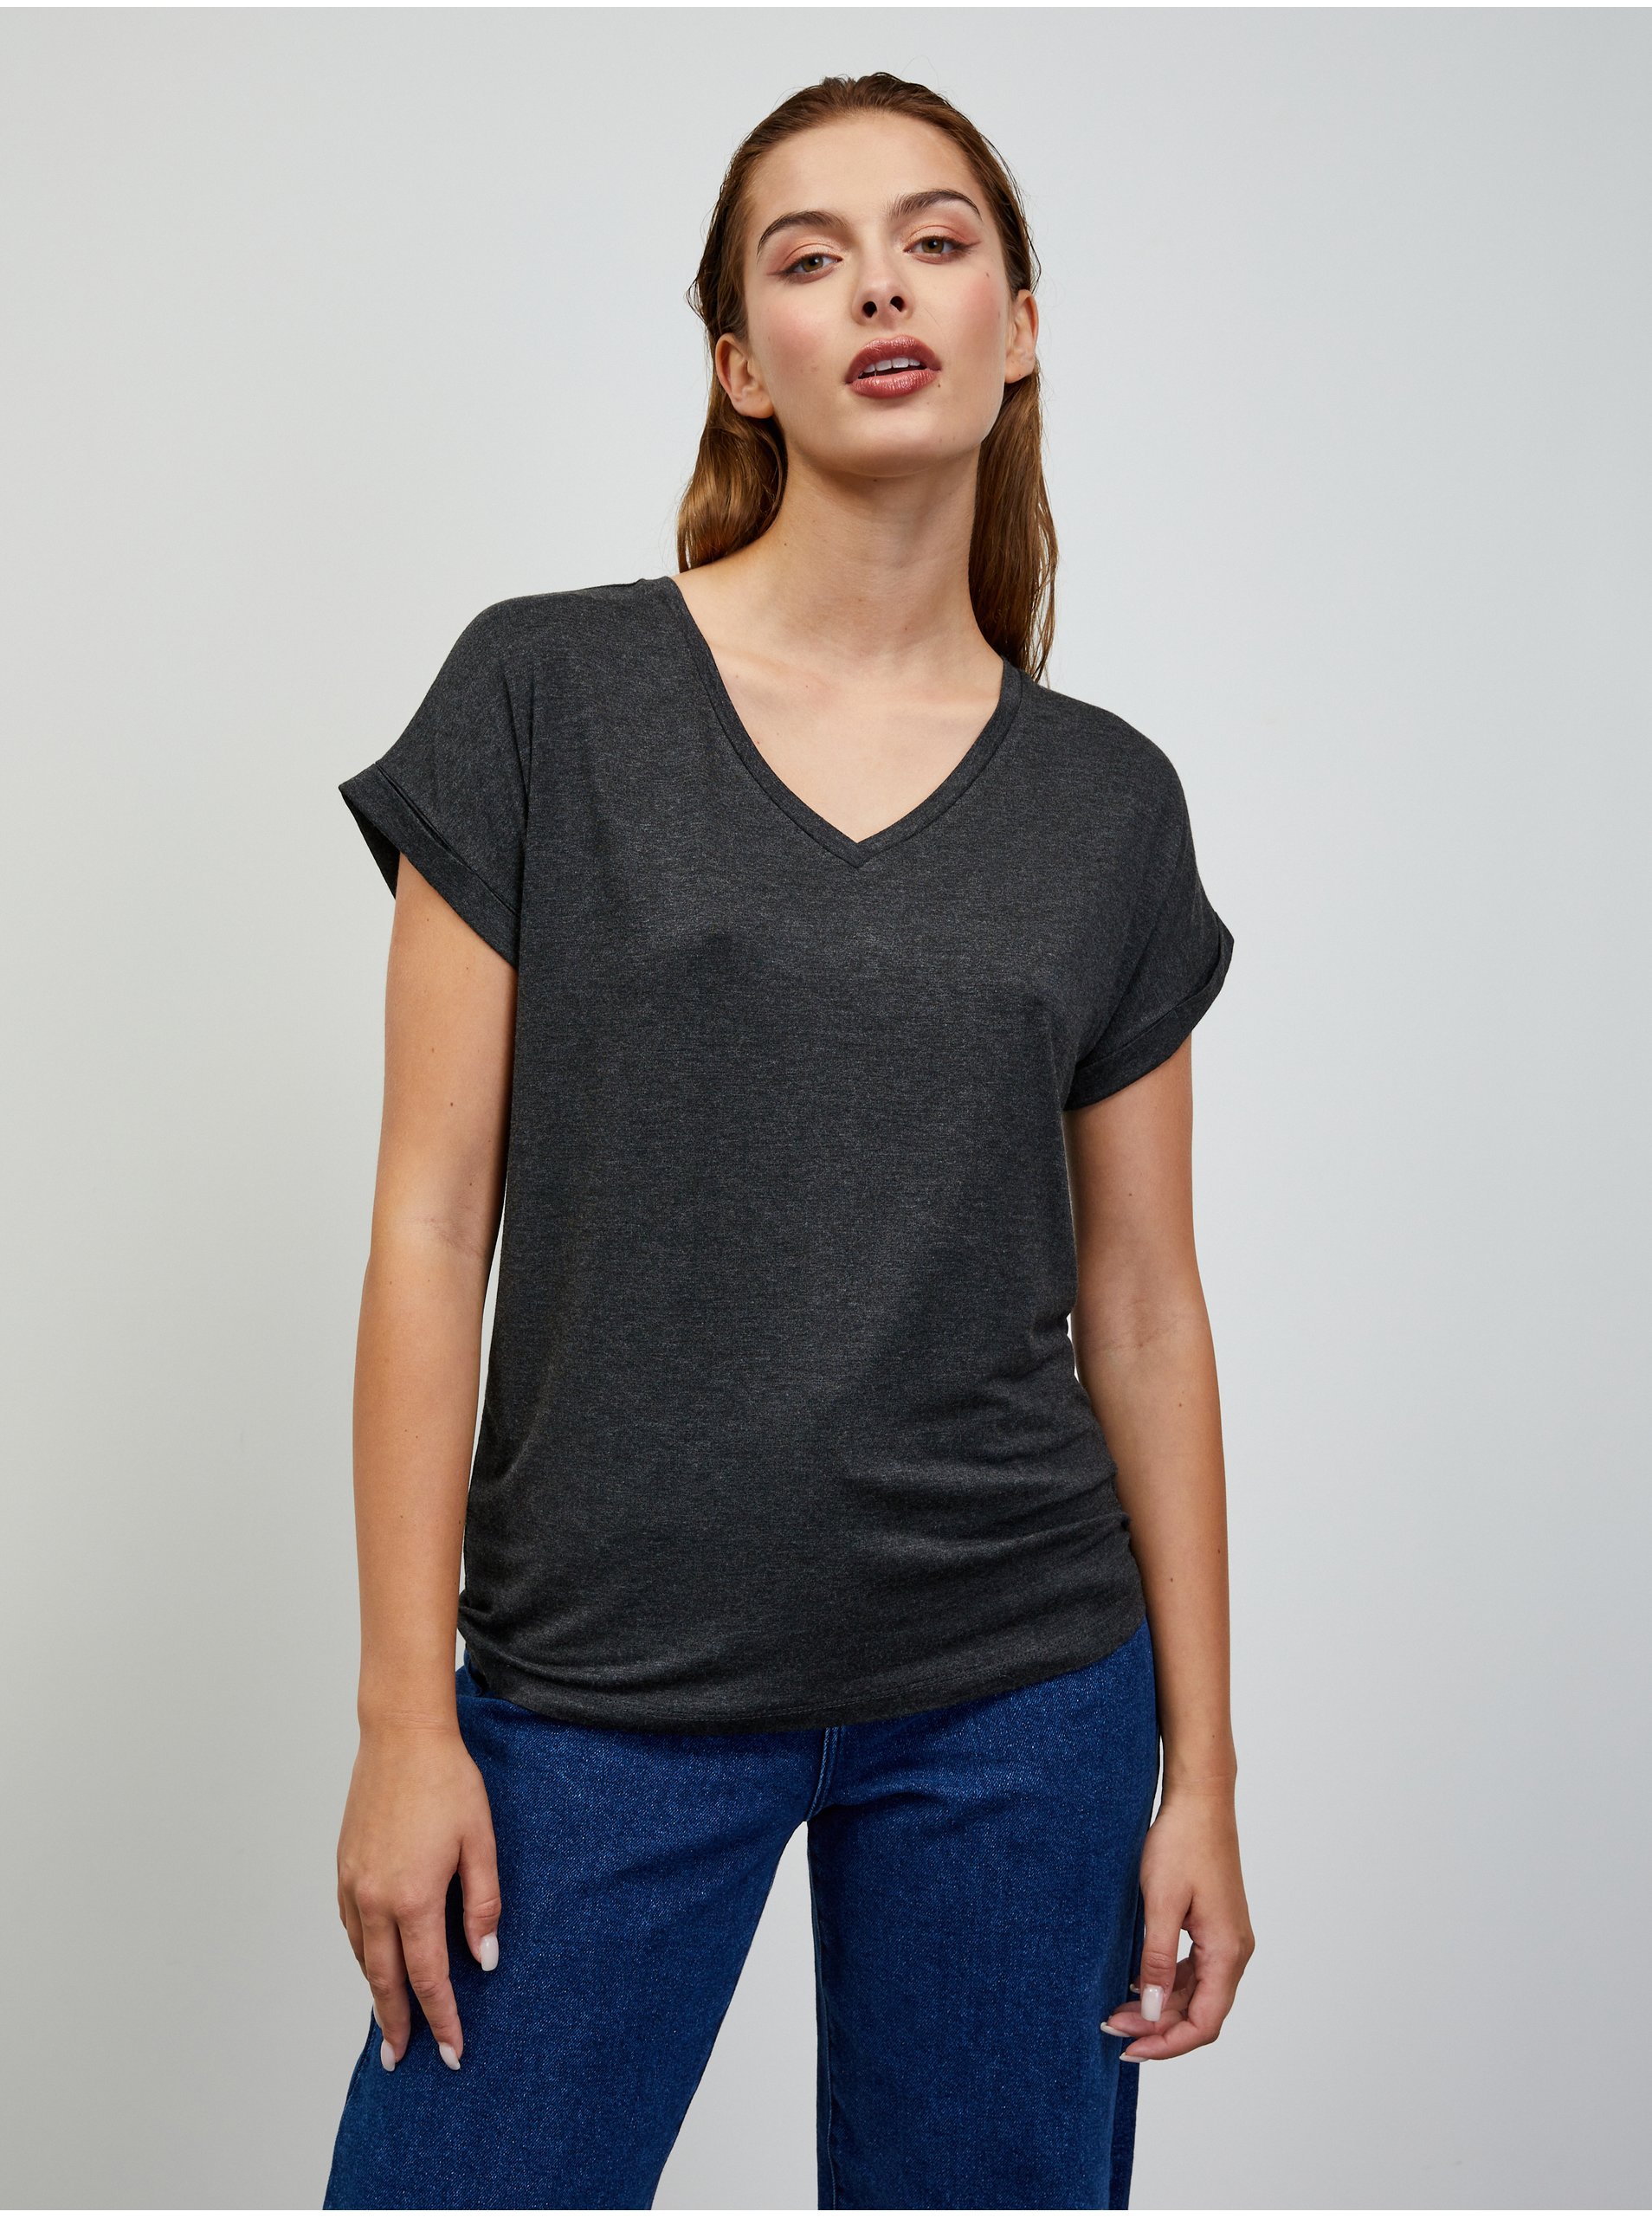 E-shop Tmavě šedé dámské žíhané basic tričko ZOOT.lab Adriana 4